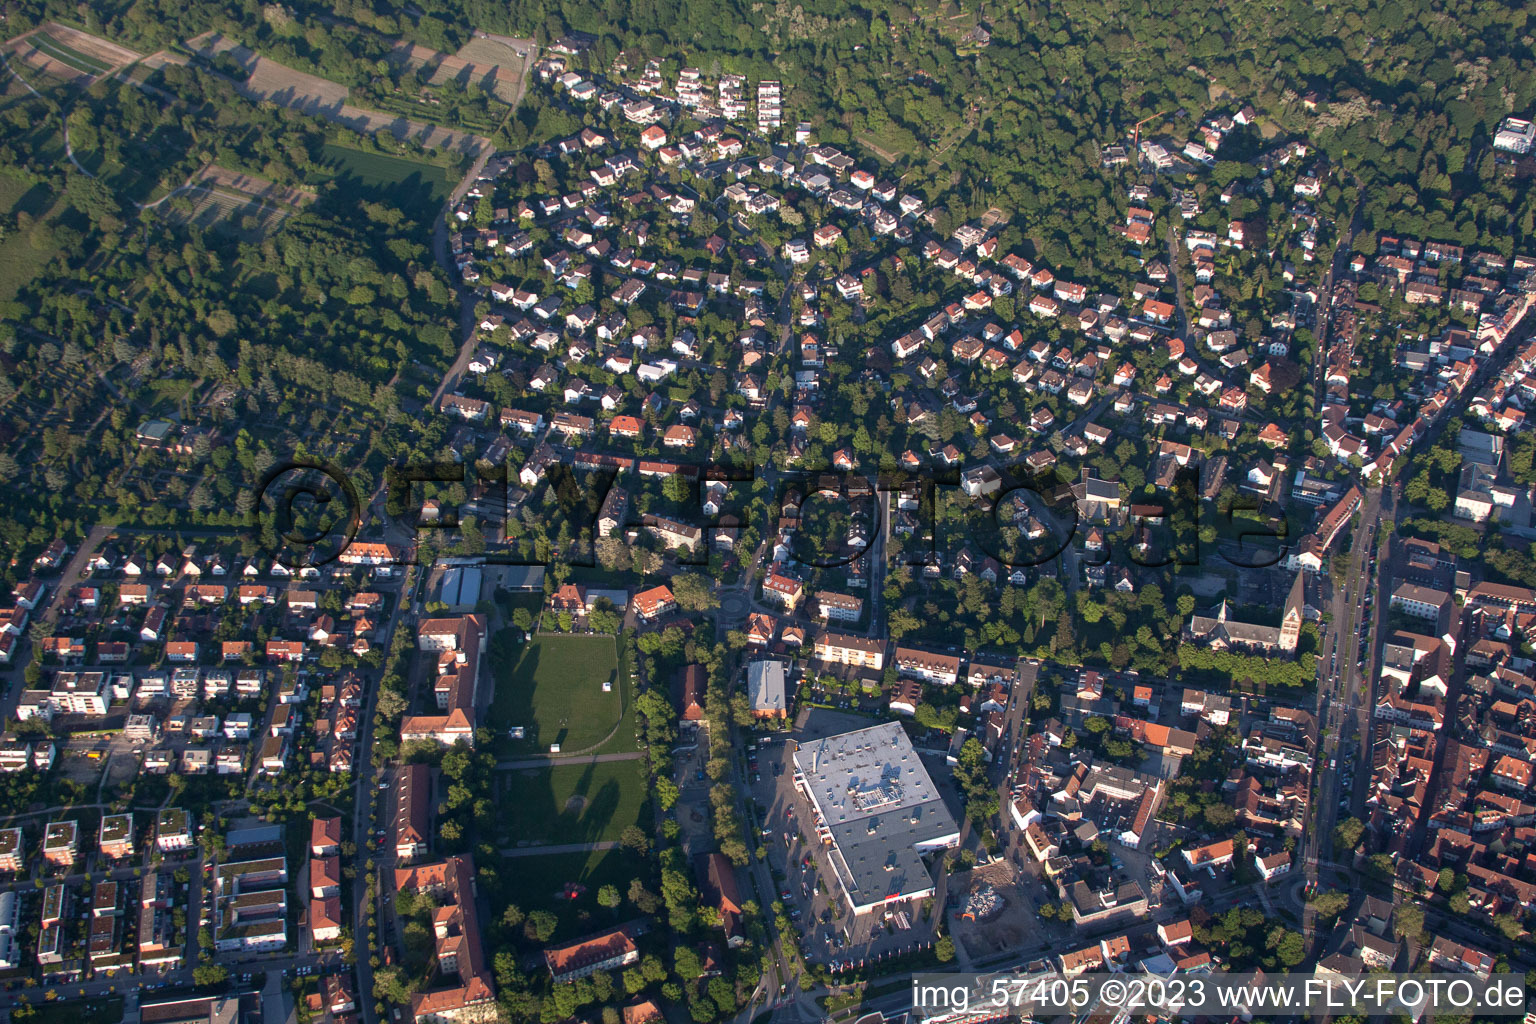 Ettlingen im Bundesland Baden-Württemberg, Deutschland aus der Luft betrachtet